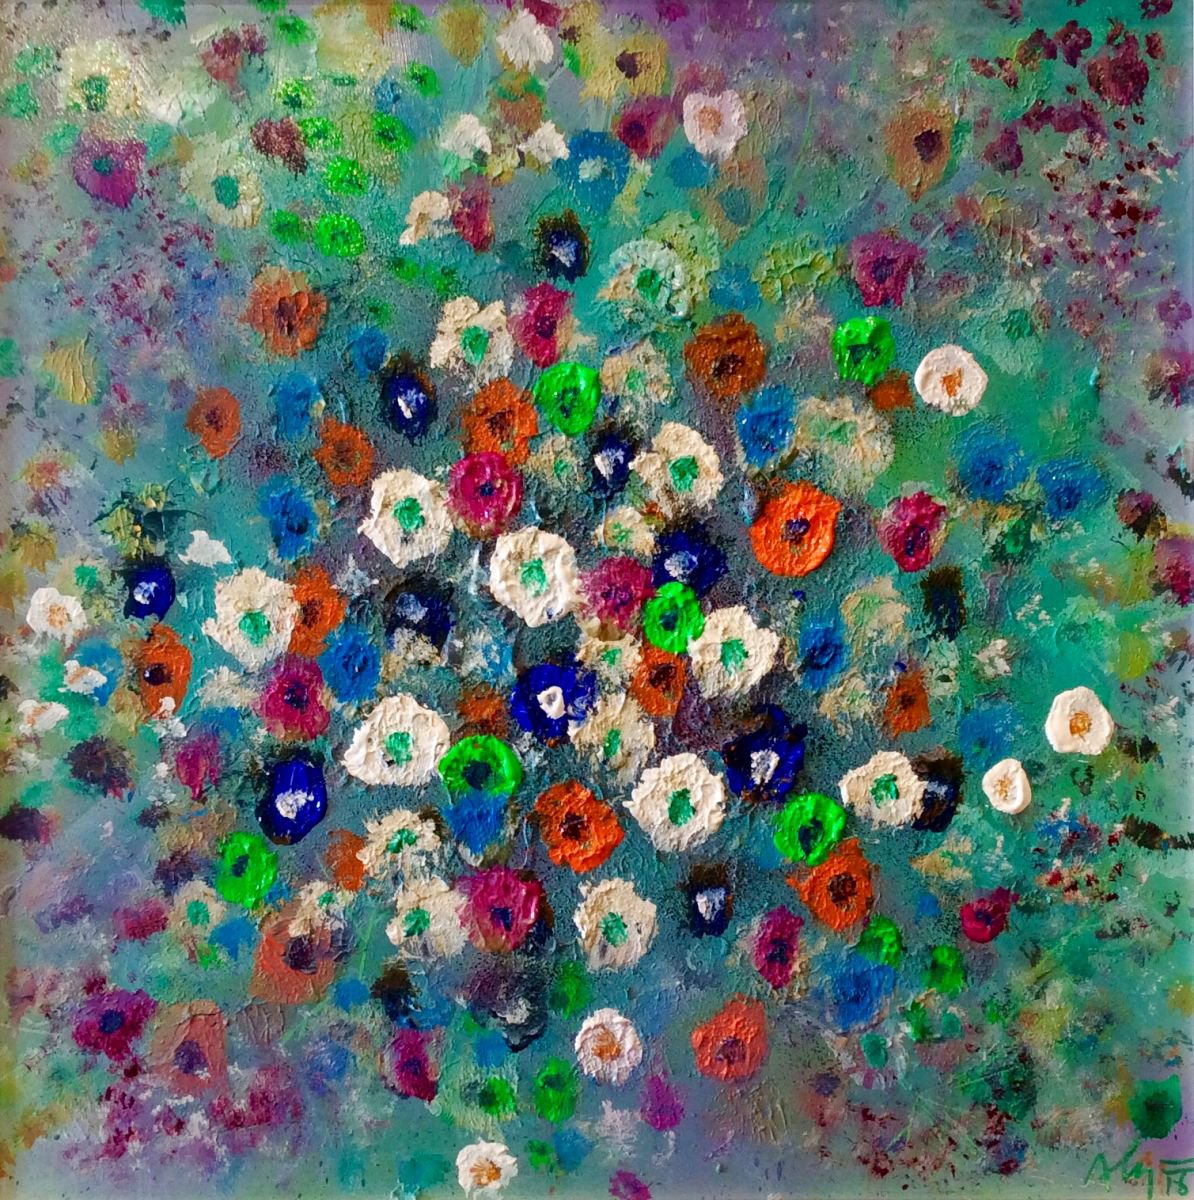 Ocean of flowers XIX by Alejos - Pop Art landscapes